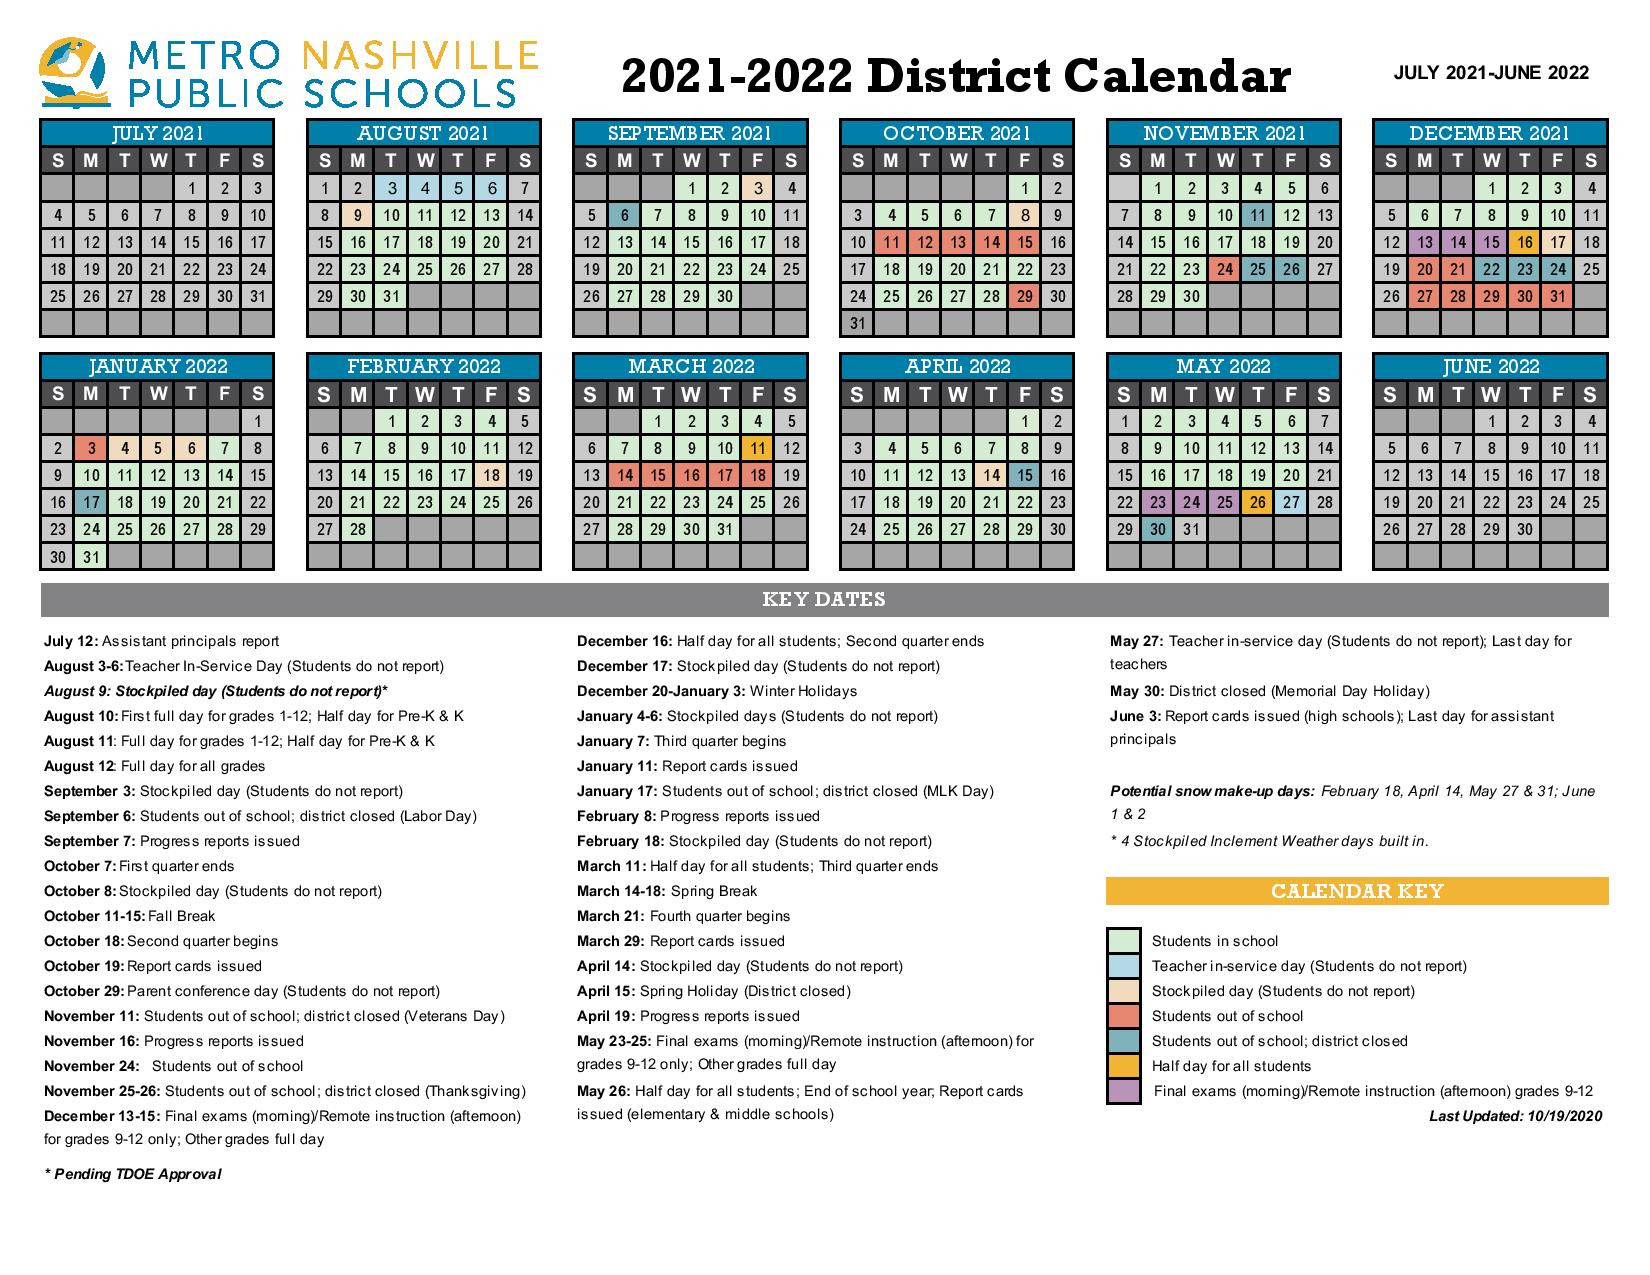 Mnps Salary Schedule 2022 2023 March Calendar 2022 : Mnps.org Calendar 2023 2022